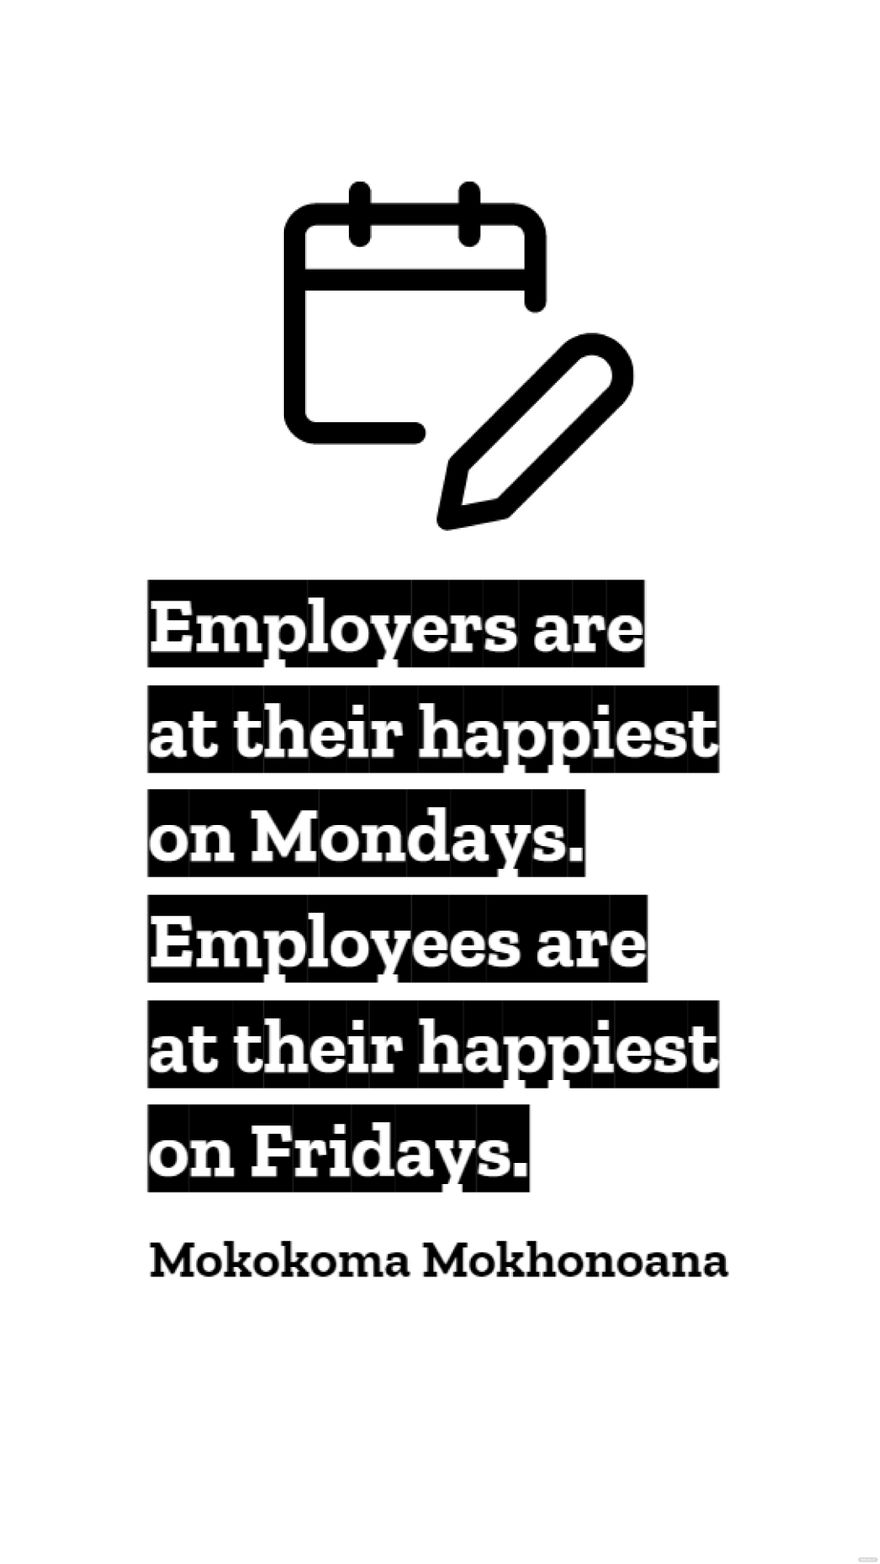 Mokokoma Mokhonoana - Employers are at their happiest on Mondays. Employees are at their happiest on Fridays. in JPG